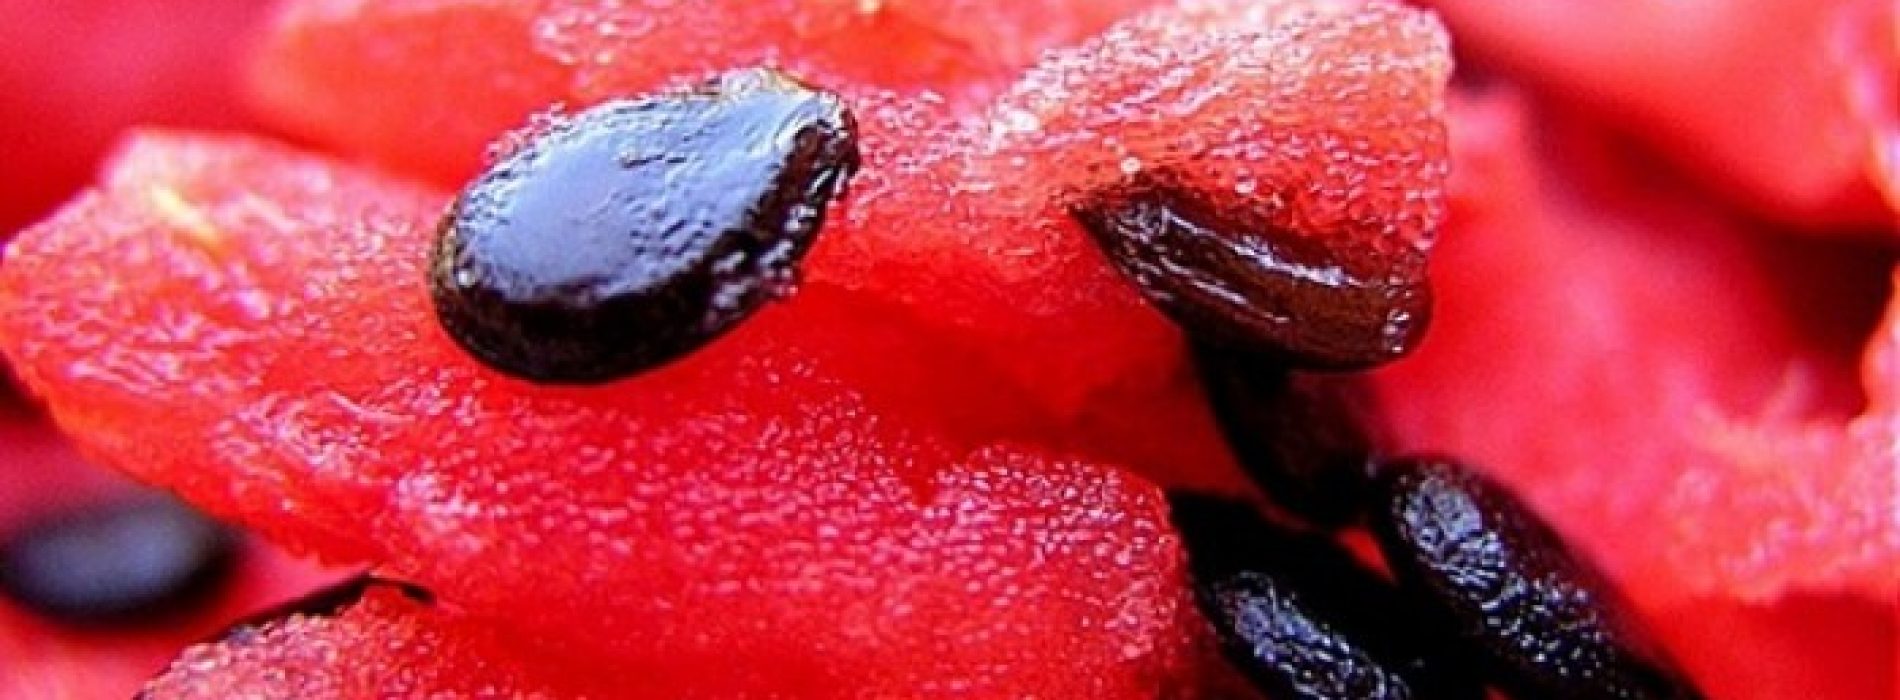 De zaden van een watermeloen verbergen een heleboel geheimen voor onze gezondheid